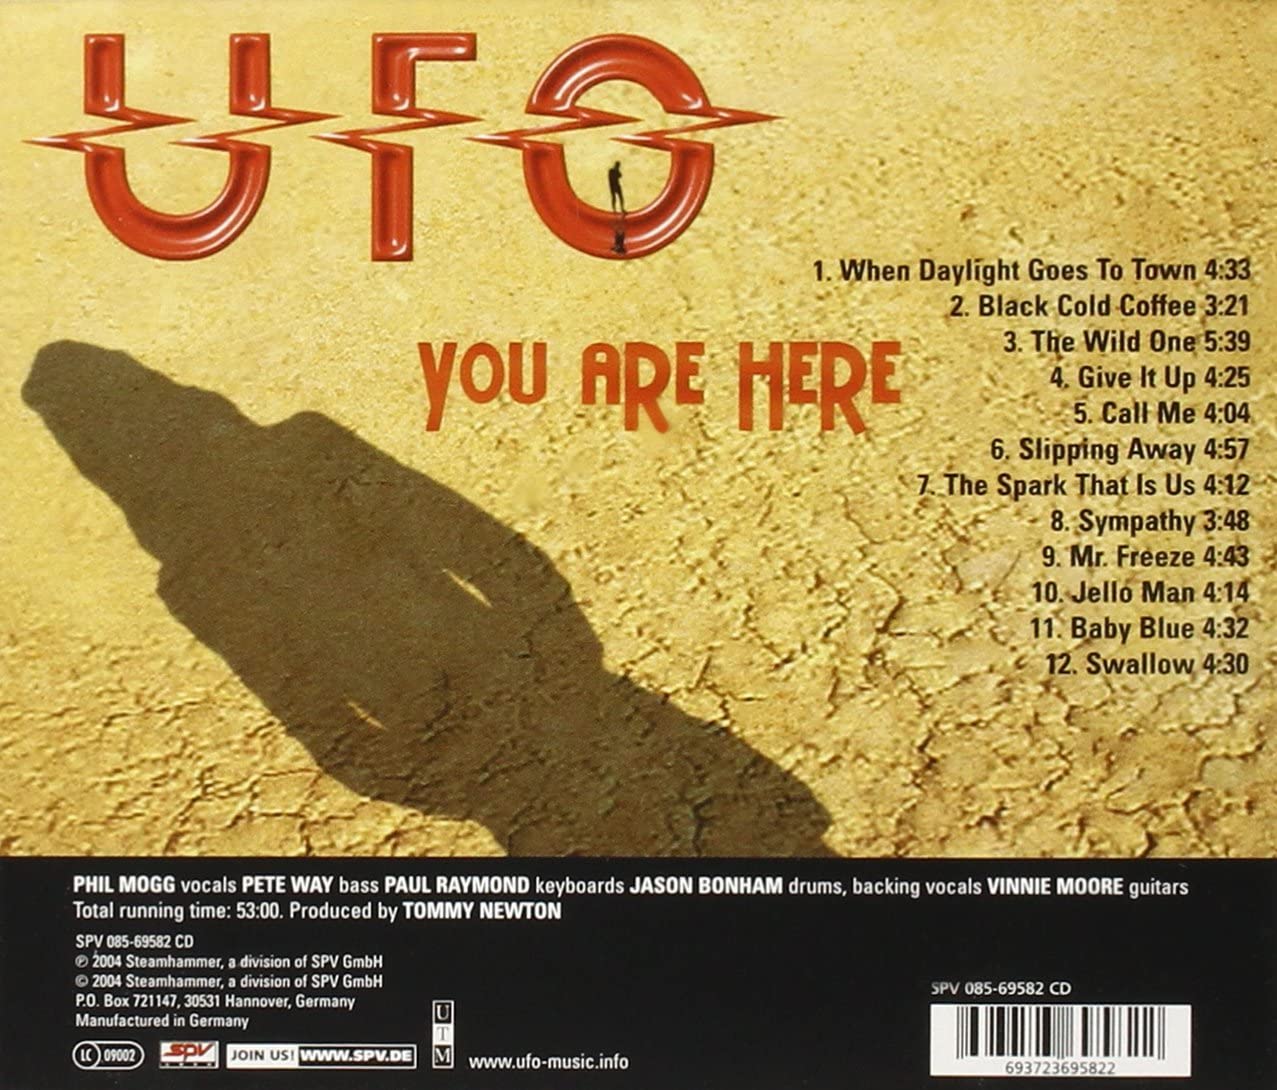 День гоу. Дискография UFO. UFO you are here 2004. Обложка христианского рока. UFO you are here 2004 обложки альбомов.